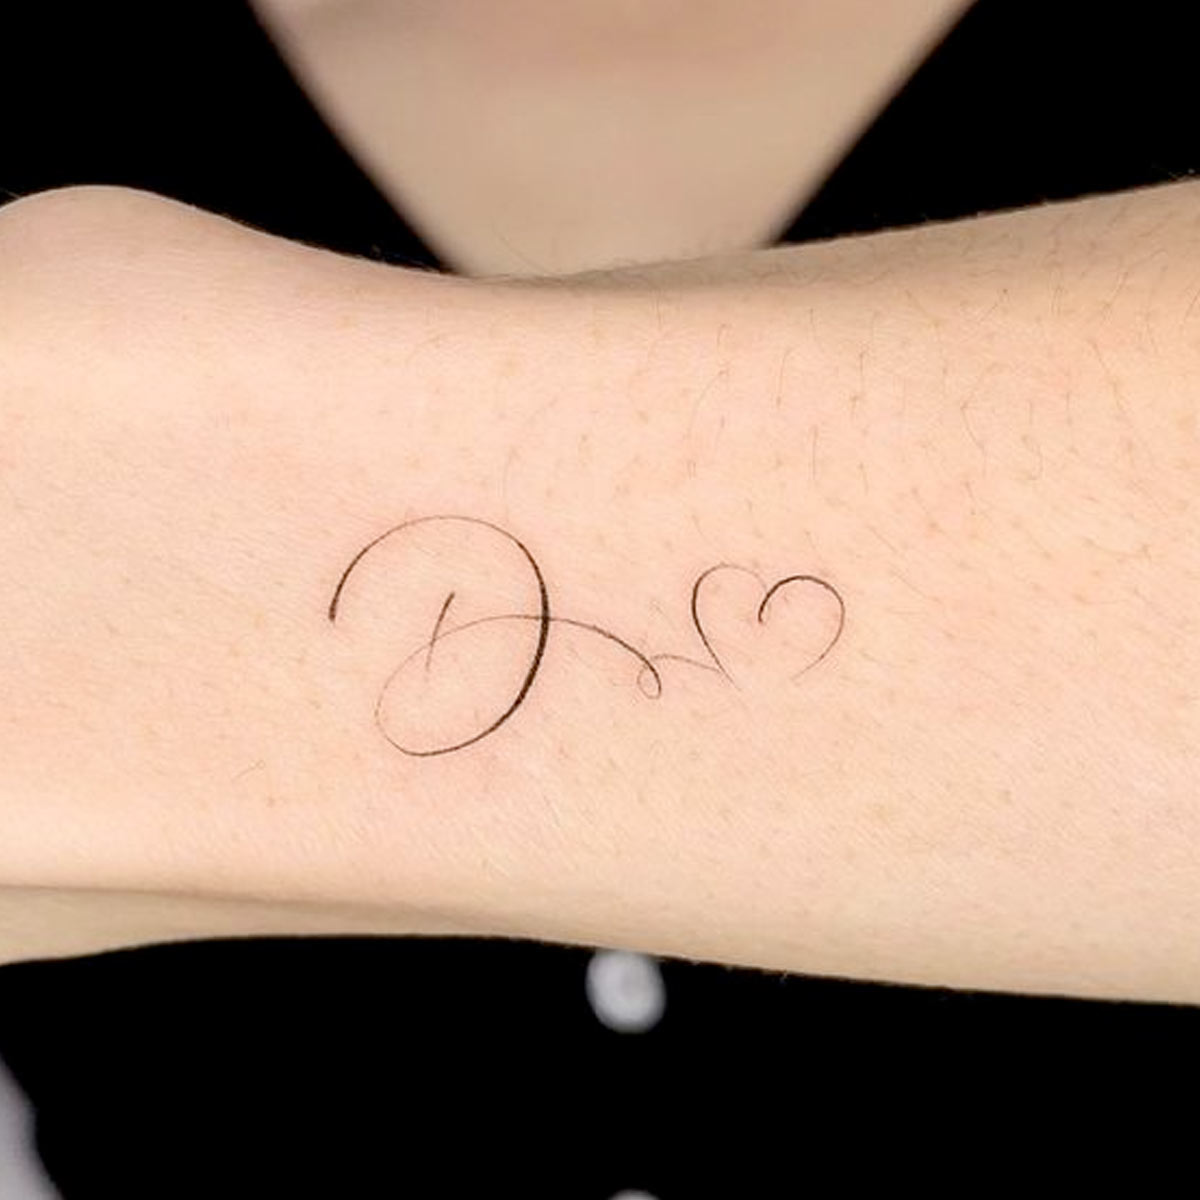 Tatuaggi lettere sul polso e braccio